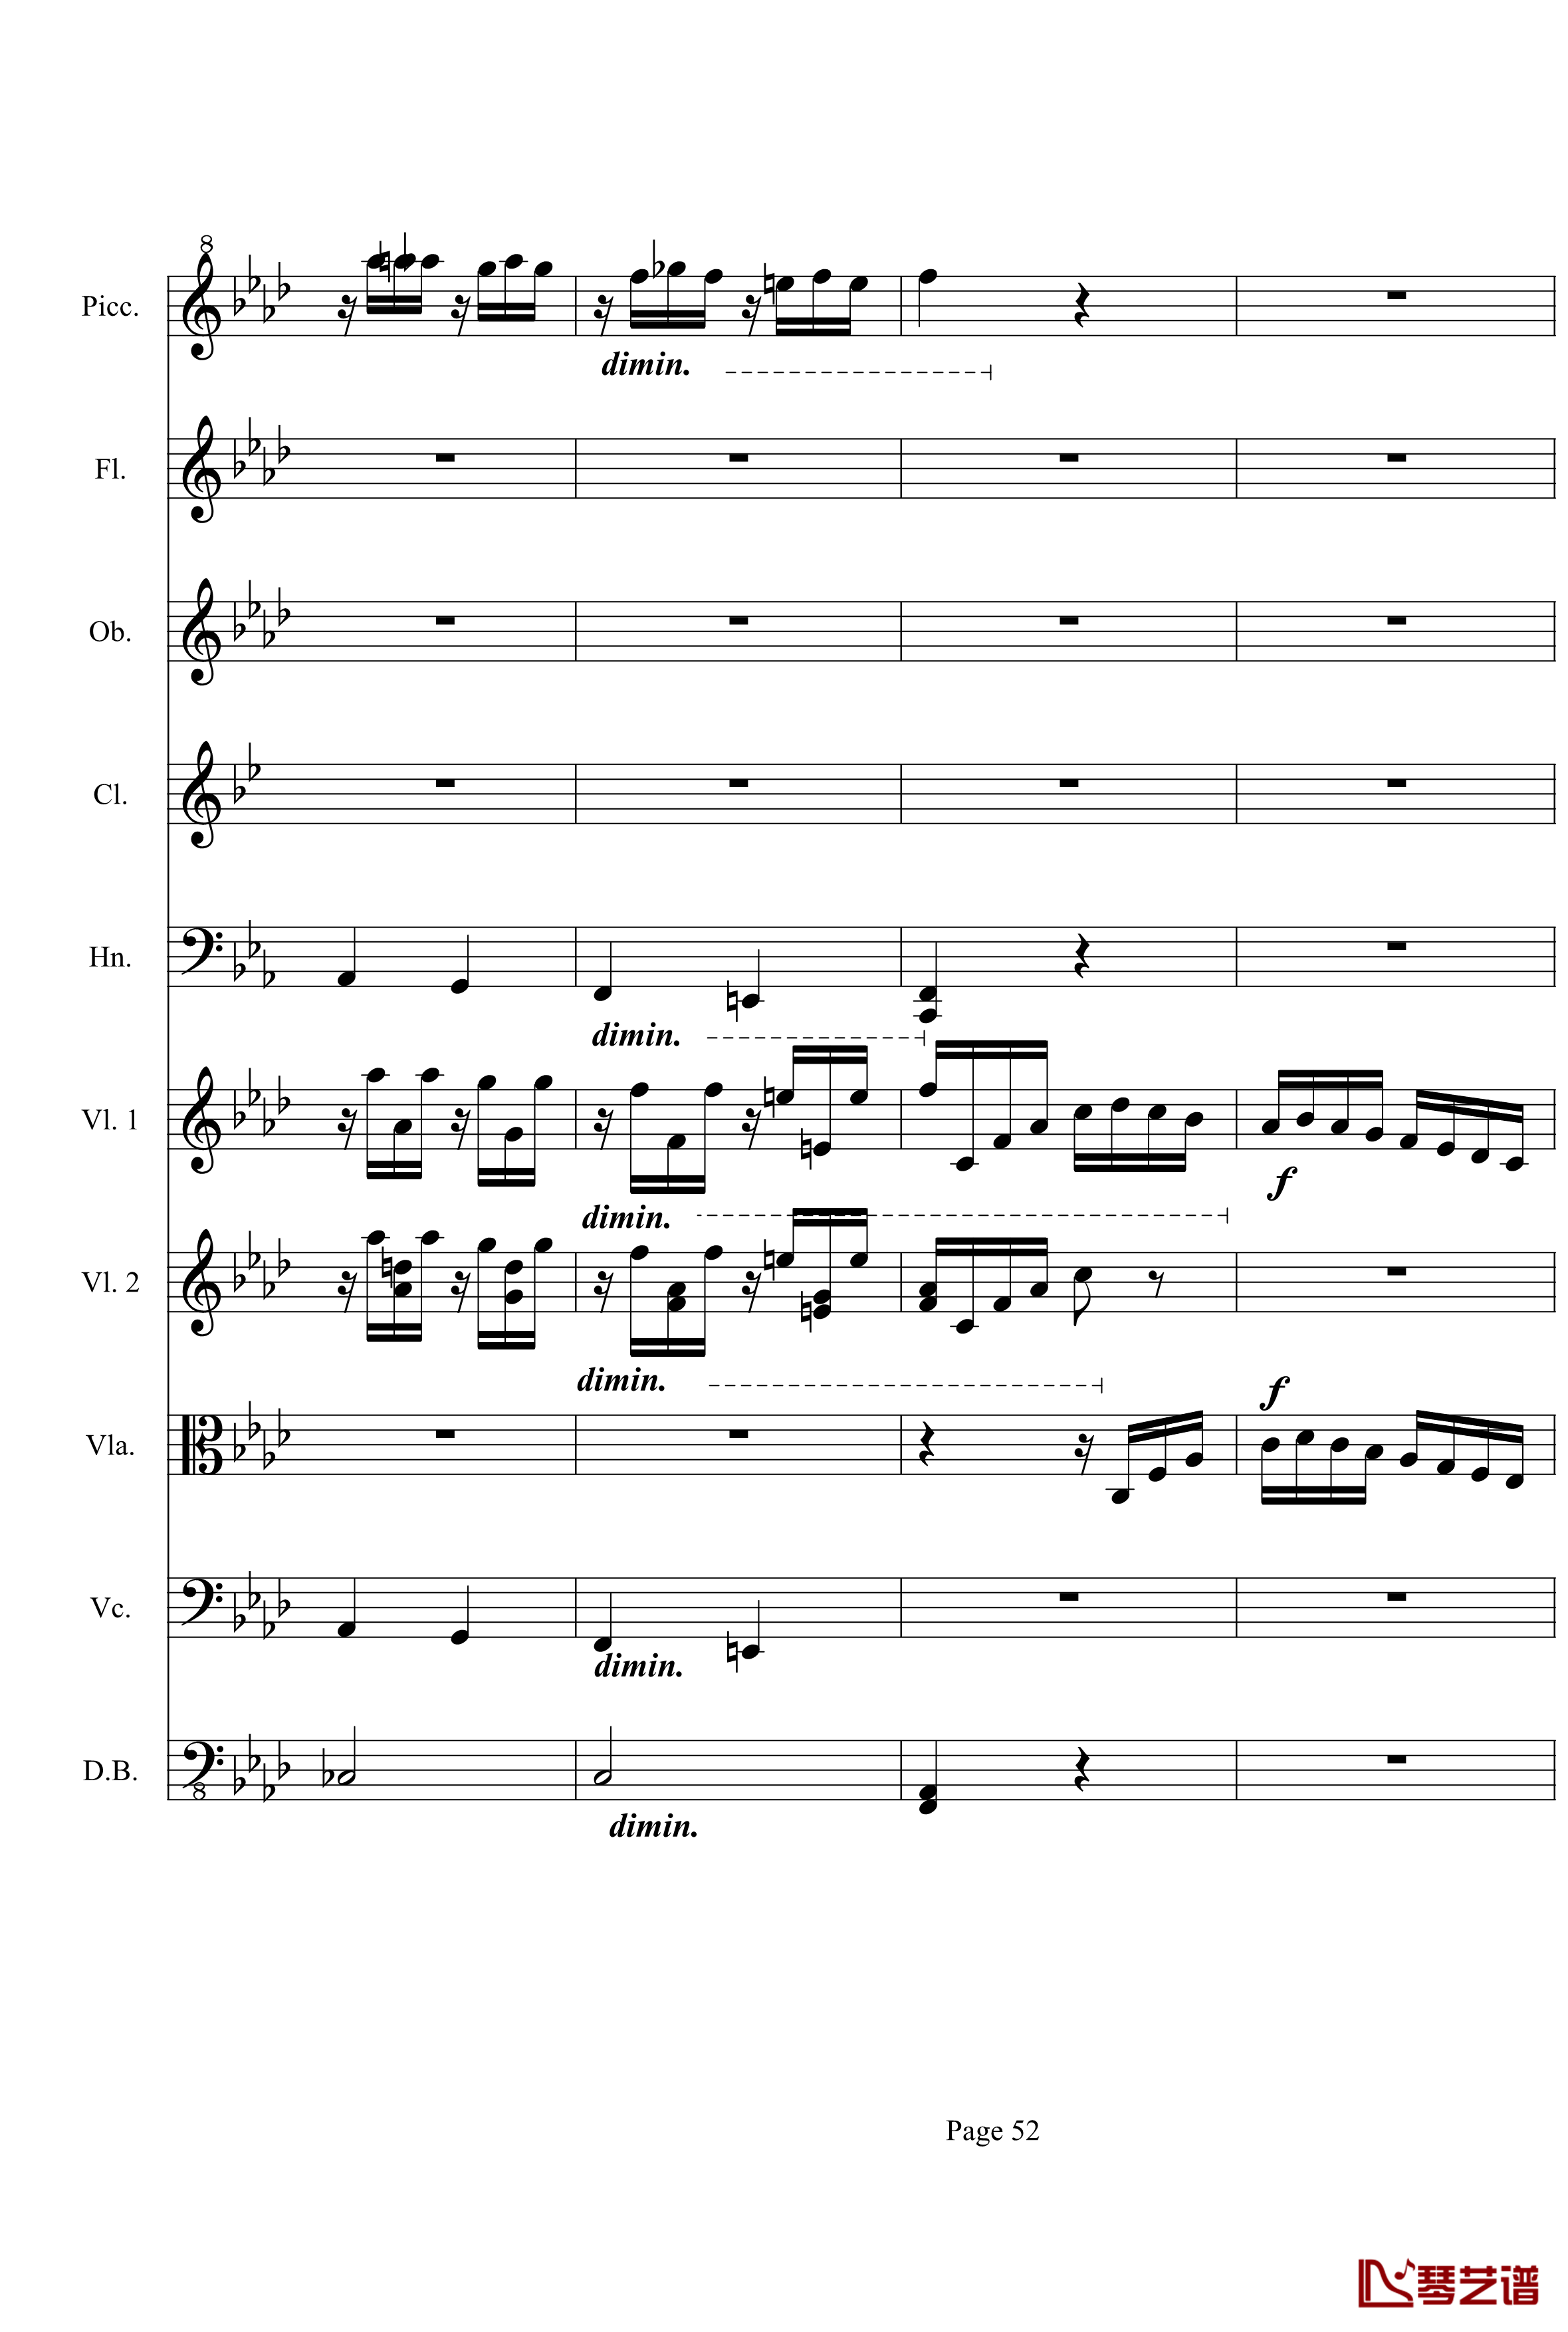 奏鸣曲之交响第23首Ⅲ钢琴谱--贝多芬-beethoven52